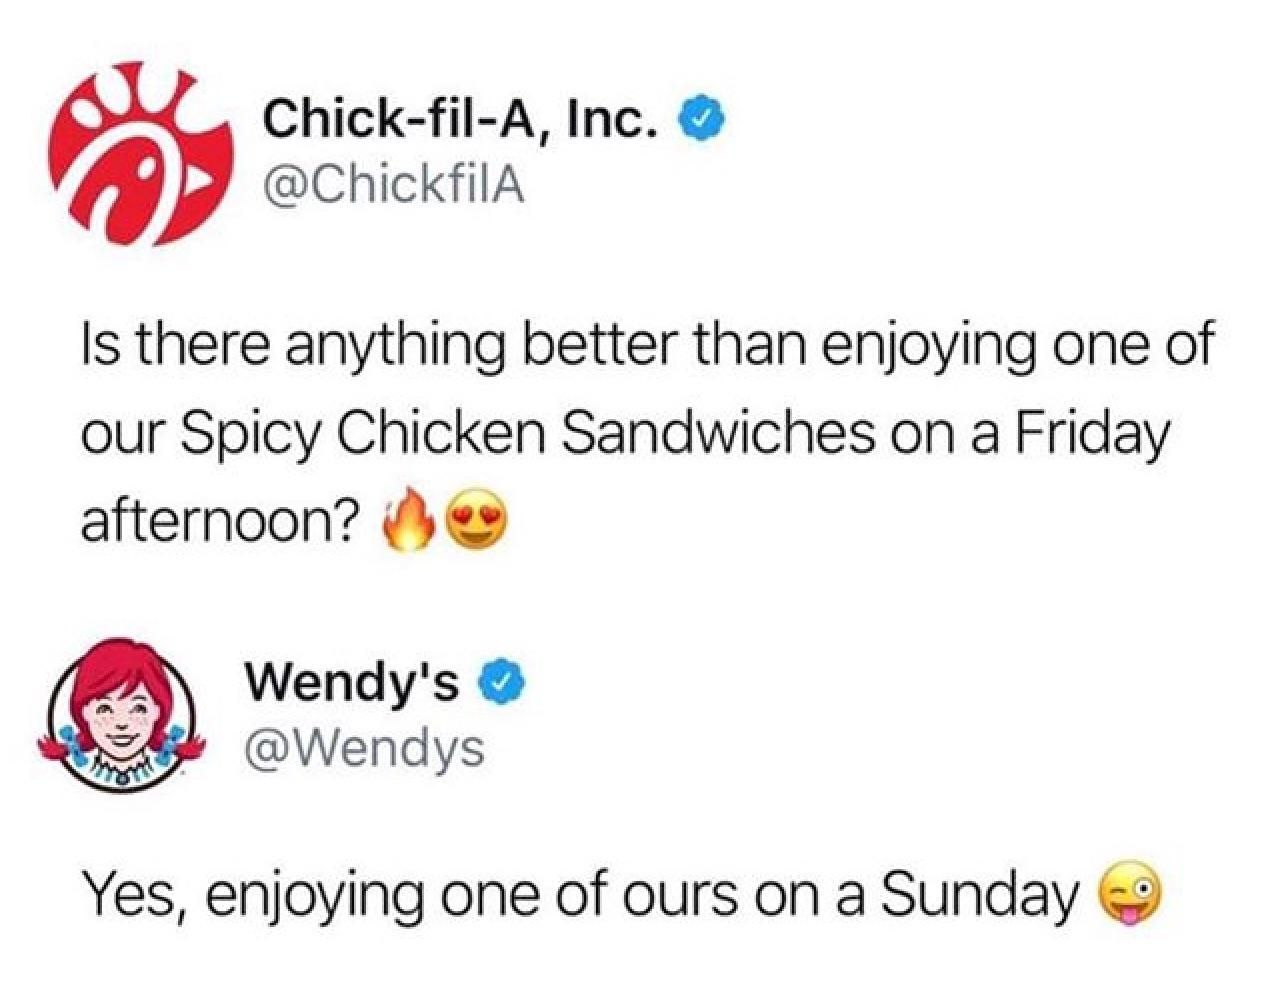 Point, Wendy’s.